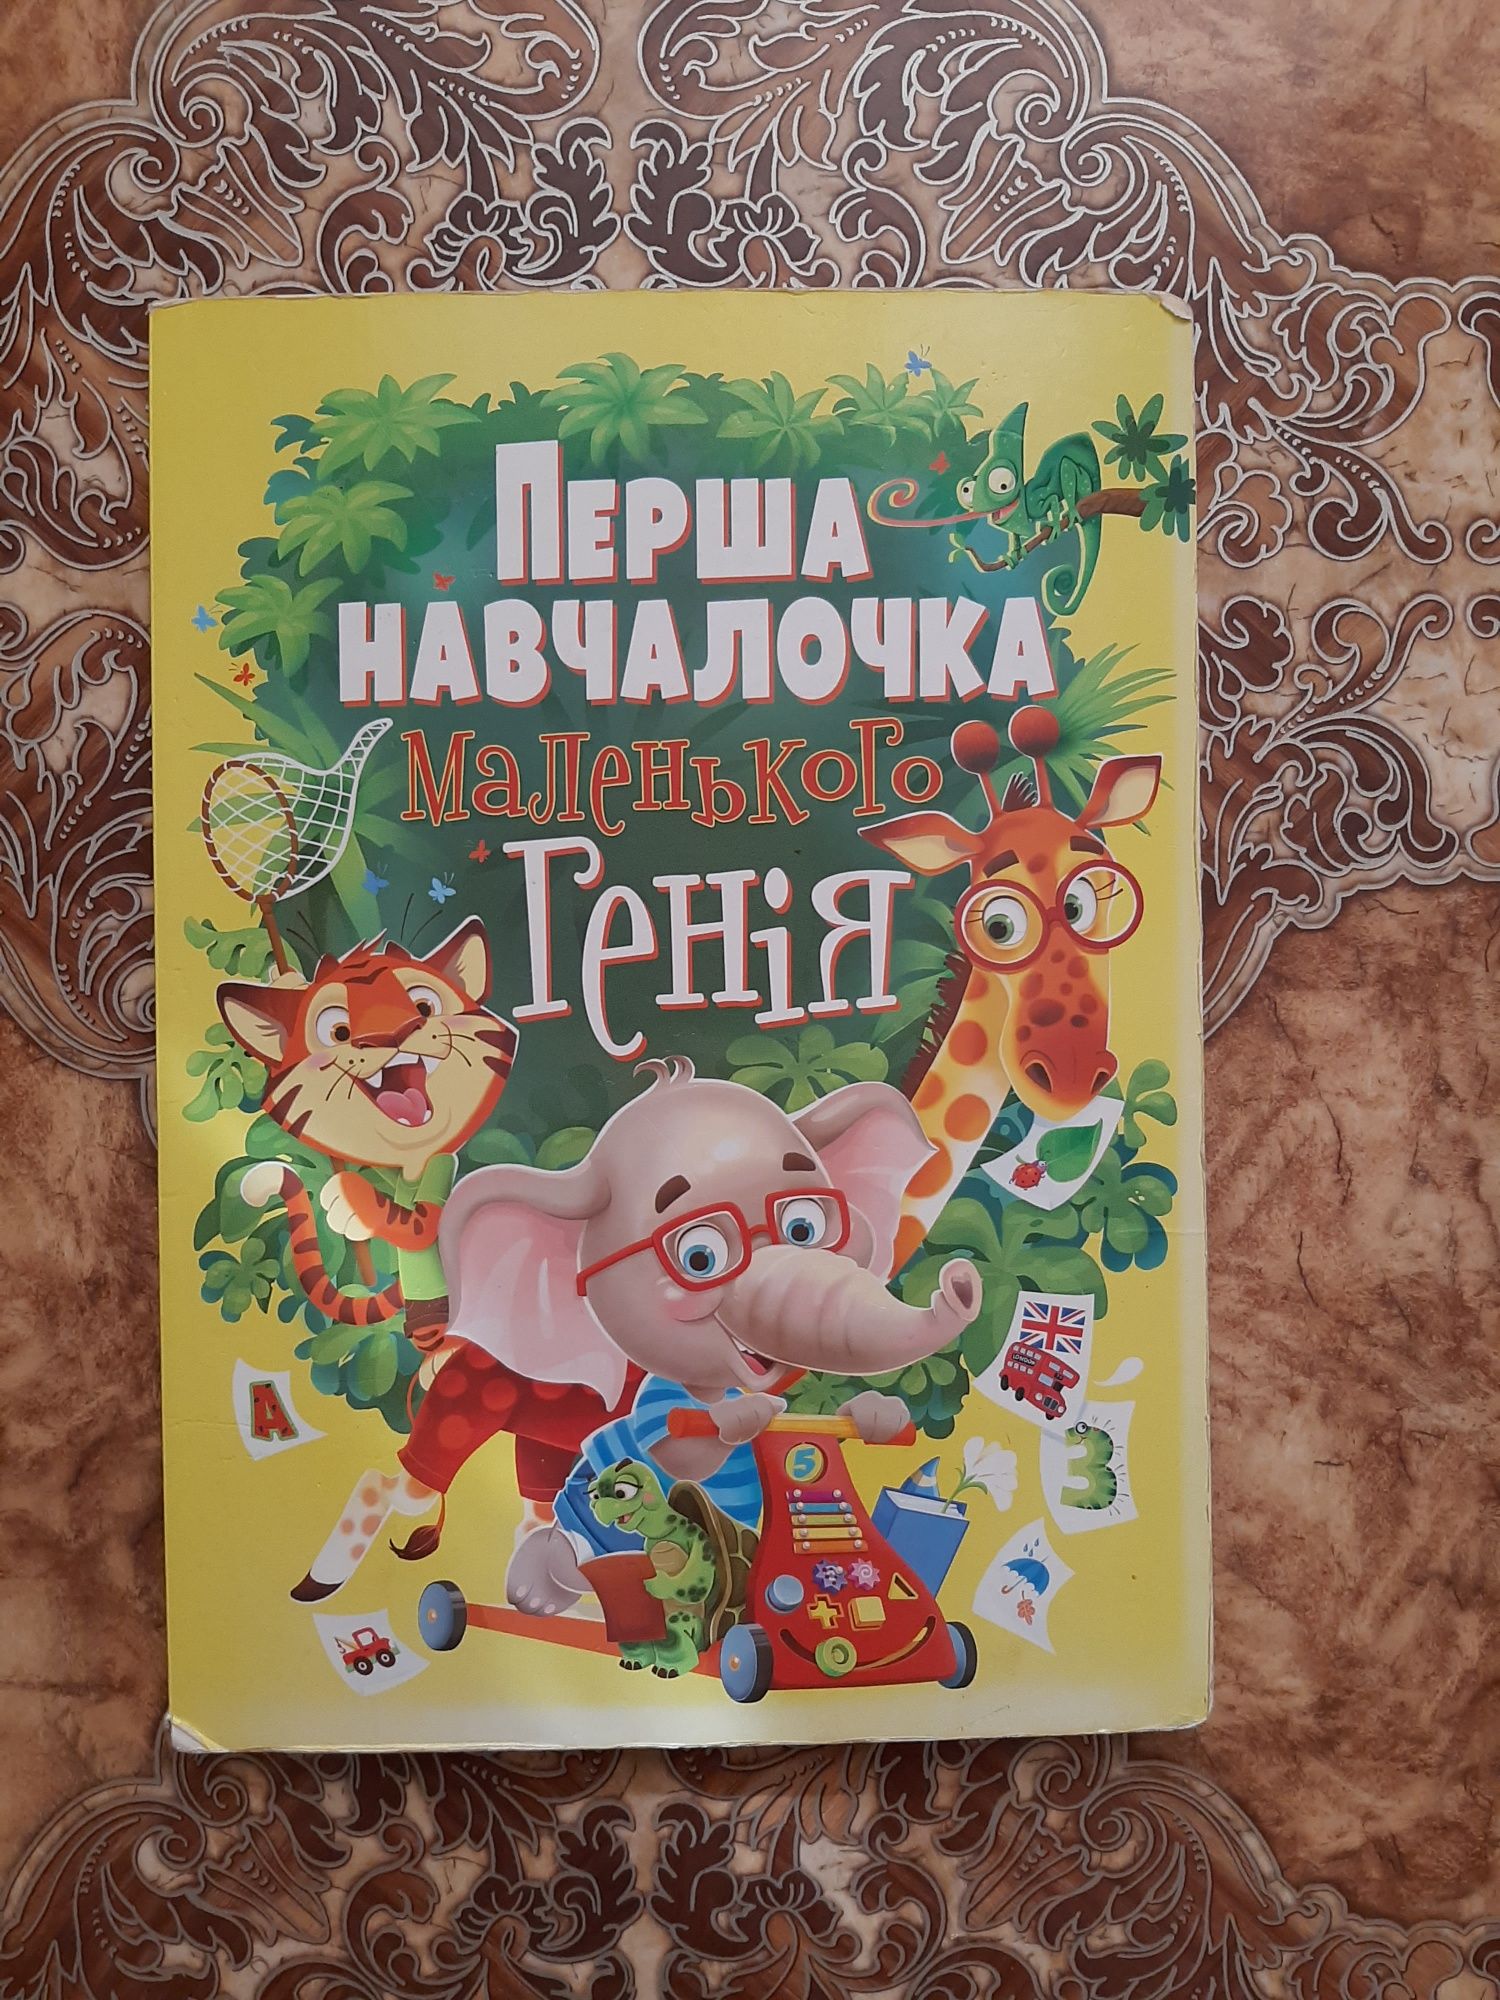 Дитячі книги на українській мові.